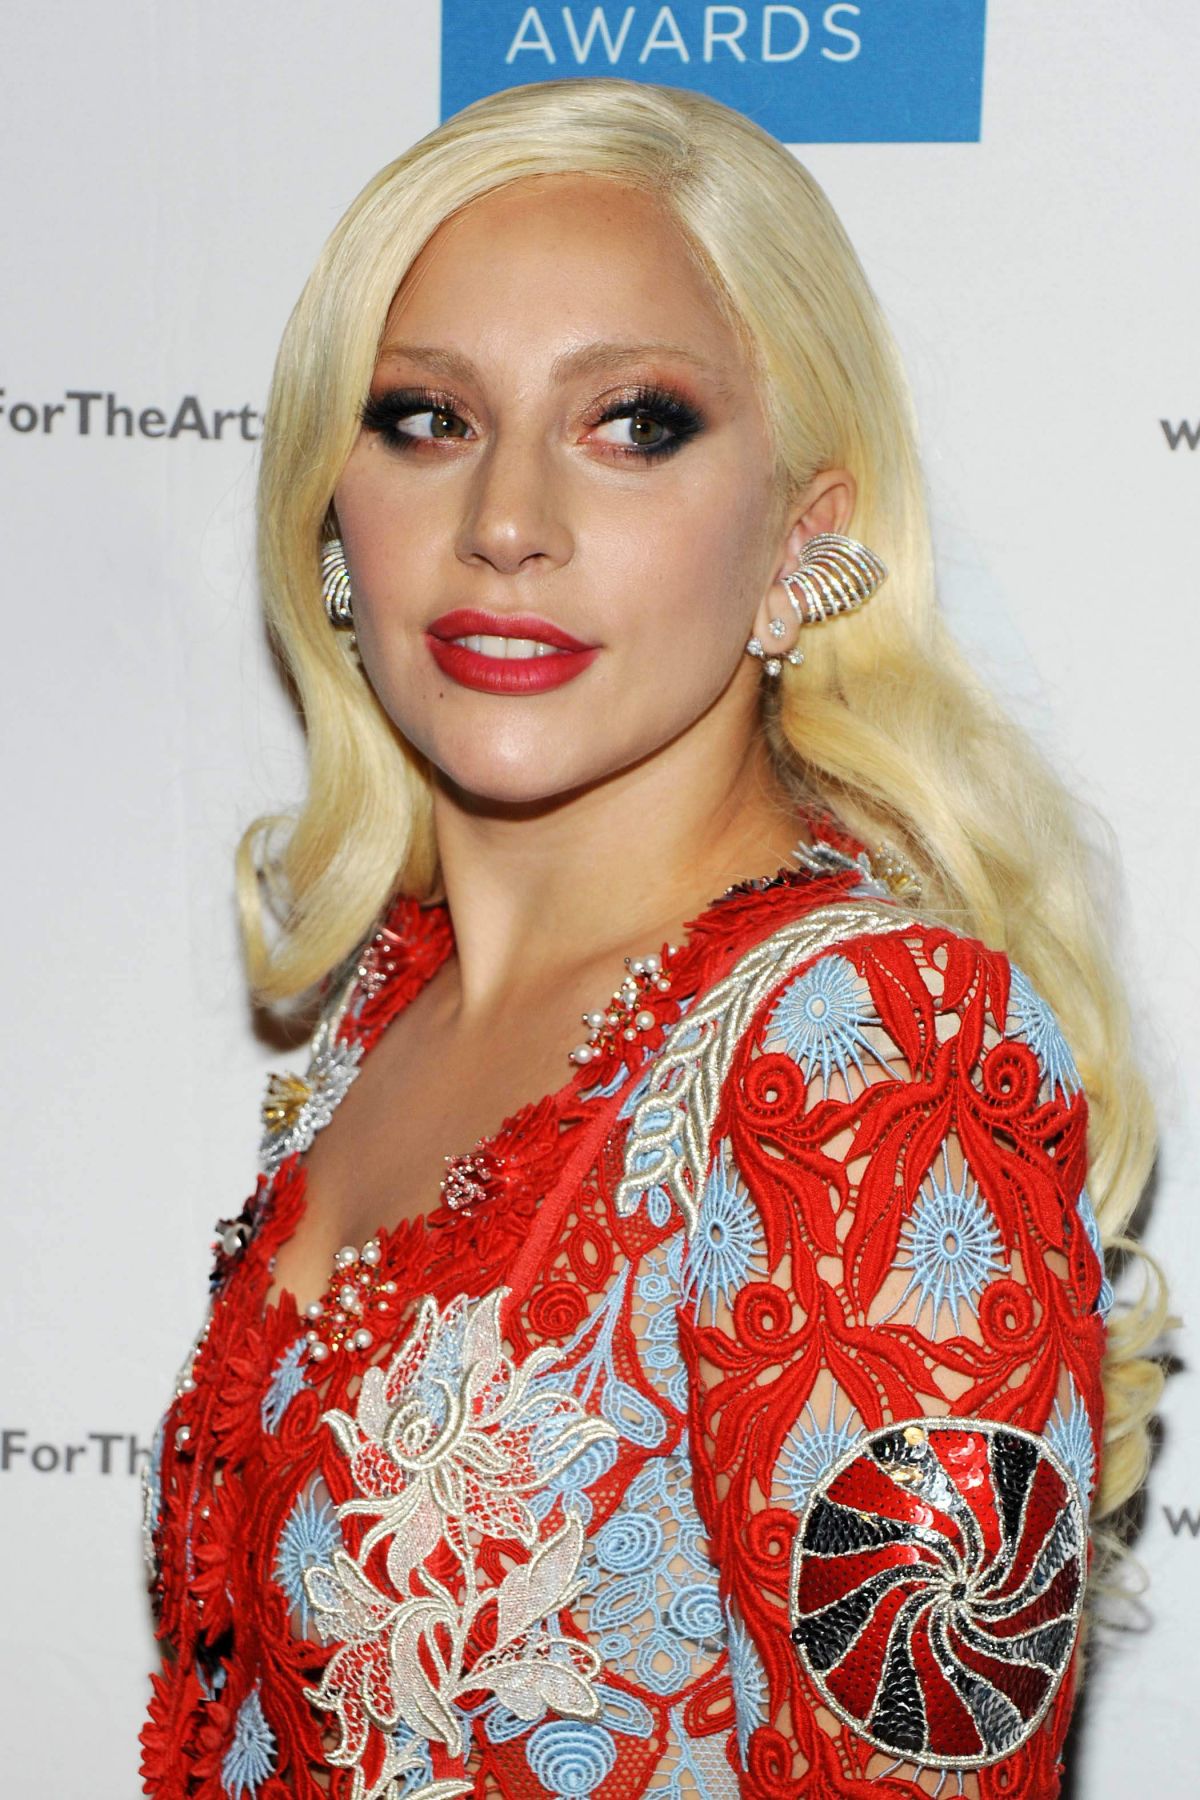 Lady Gaga At 2015 National Arts Awards In New York 10 19